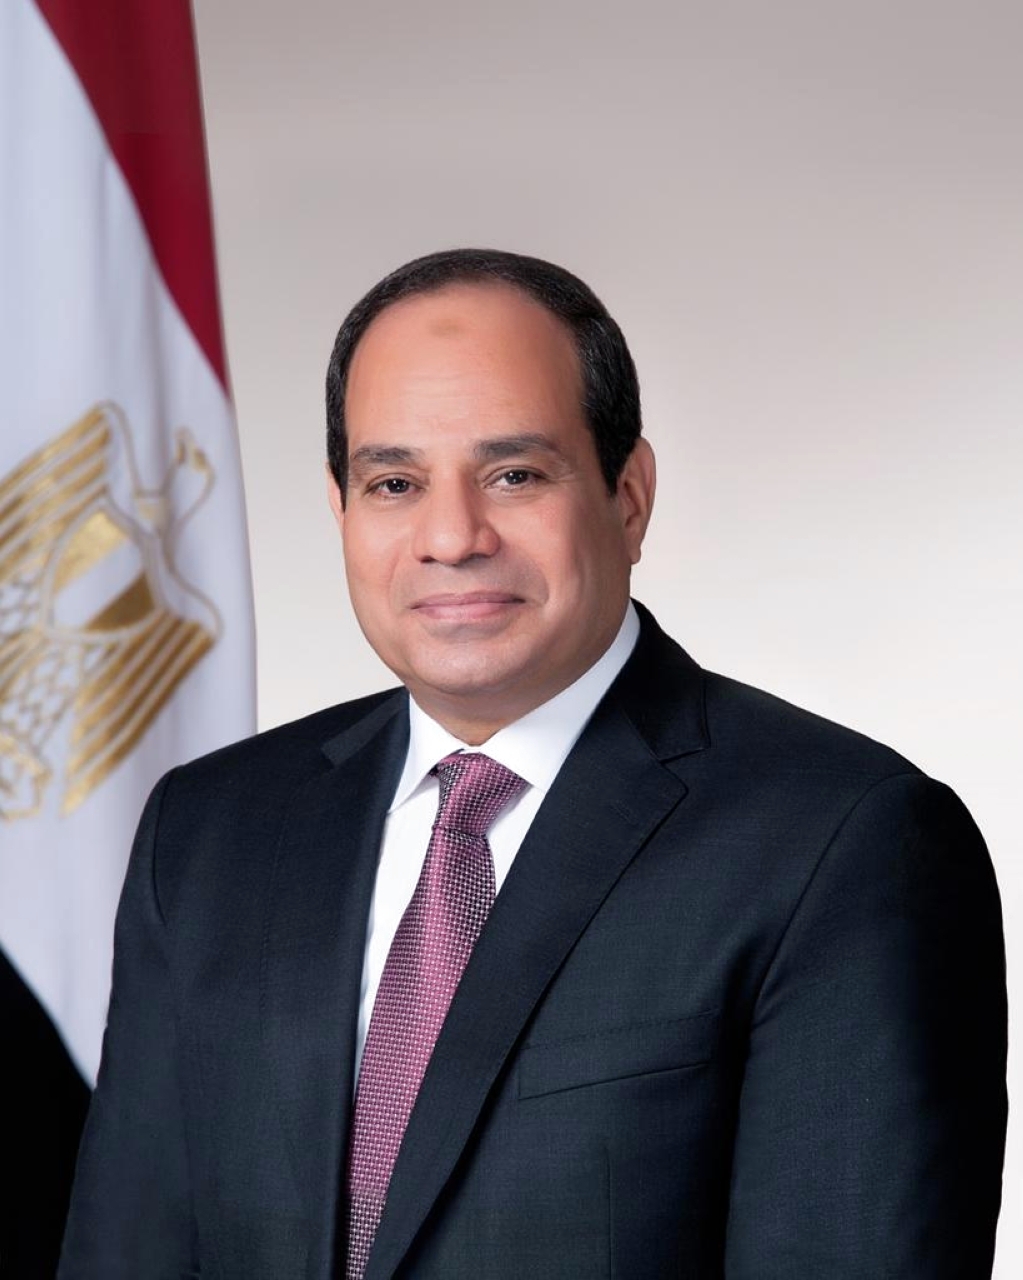 الصورة : 2014 تنصيب المشير عبد الفتاح السيسي رئيساً لمصر، خلفاً للرئيس المؤقت عدلي منصور.